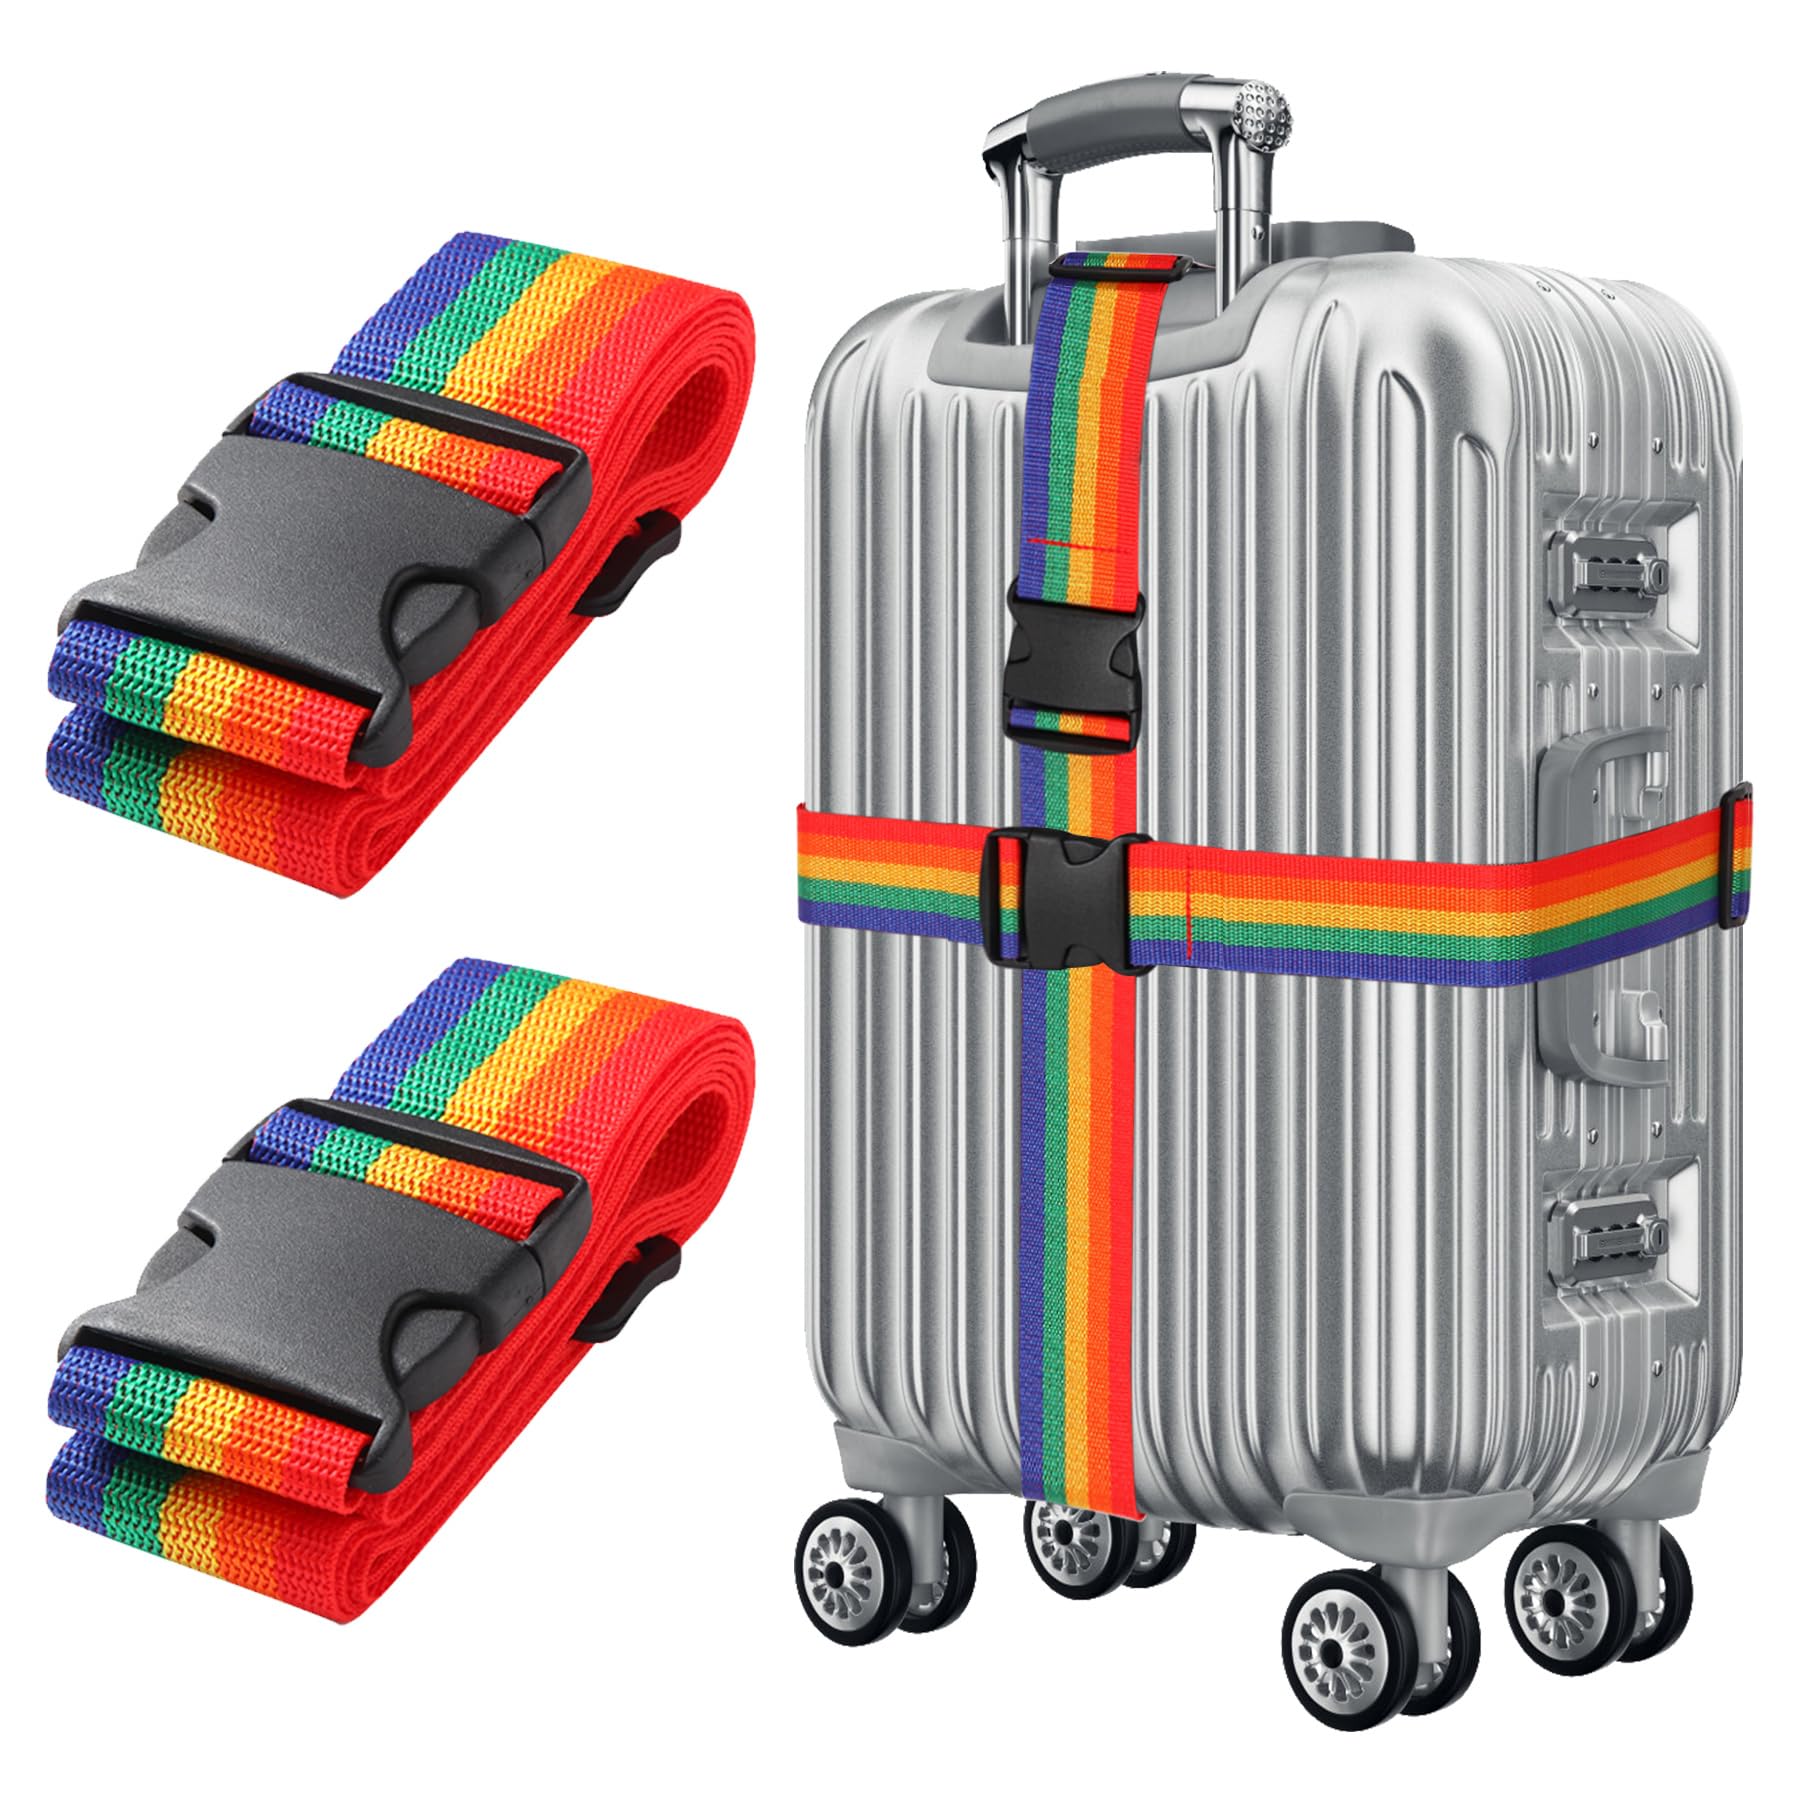 Bunt Koffergurt Koffer Band 195cm Gepäckgurt Lang Koffer Gepäckgurte Kofferband Gurt mit klickverschluss Kofferbänder 2er Set Verstellbare Koffer Gepäckgurte Luggage Strap für Koffer von Gyxcelc